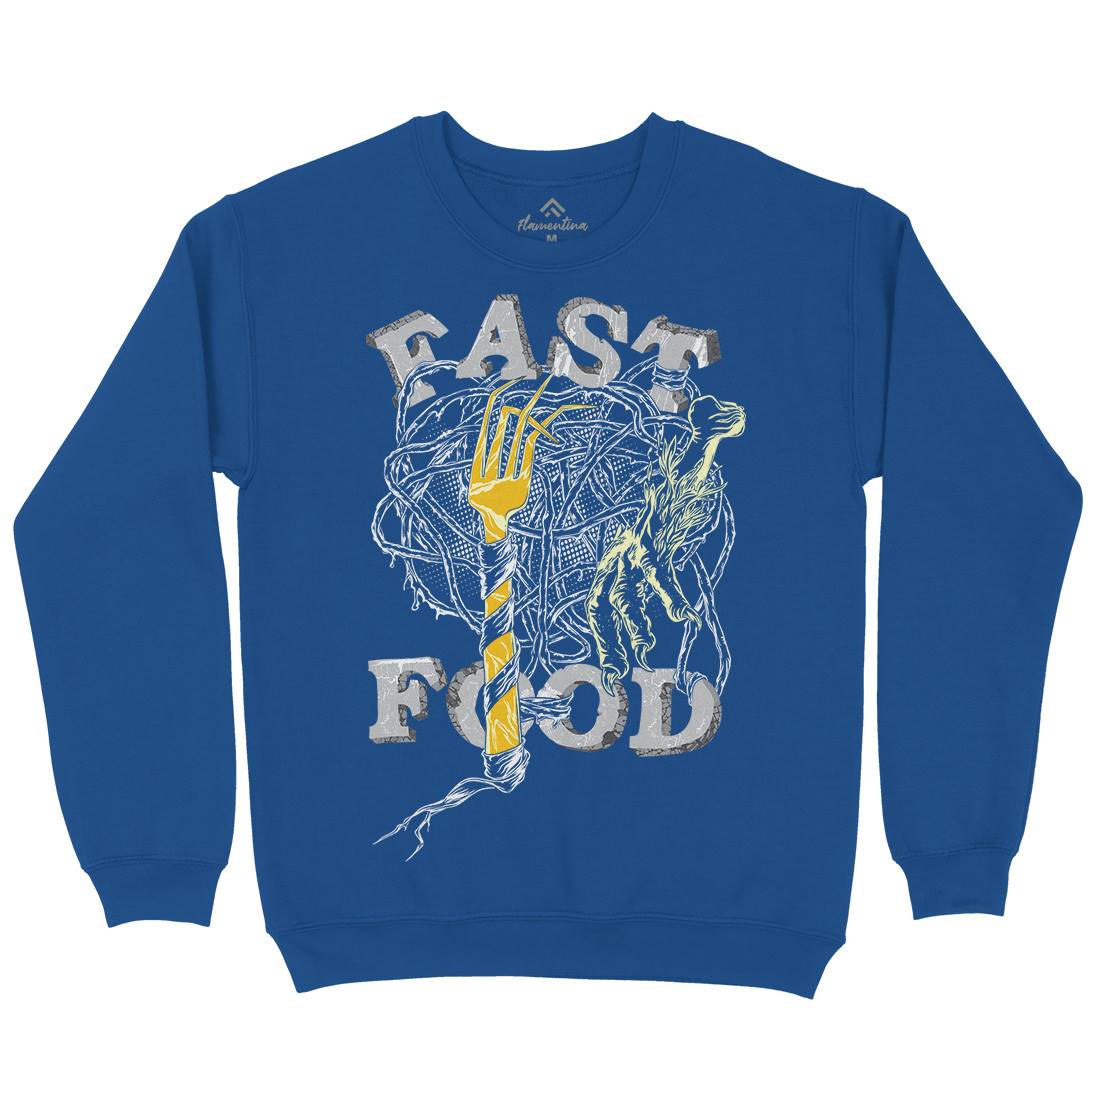 Fast Kids Crew Neck Sweatshirt Food C931